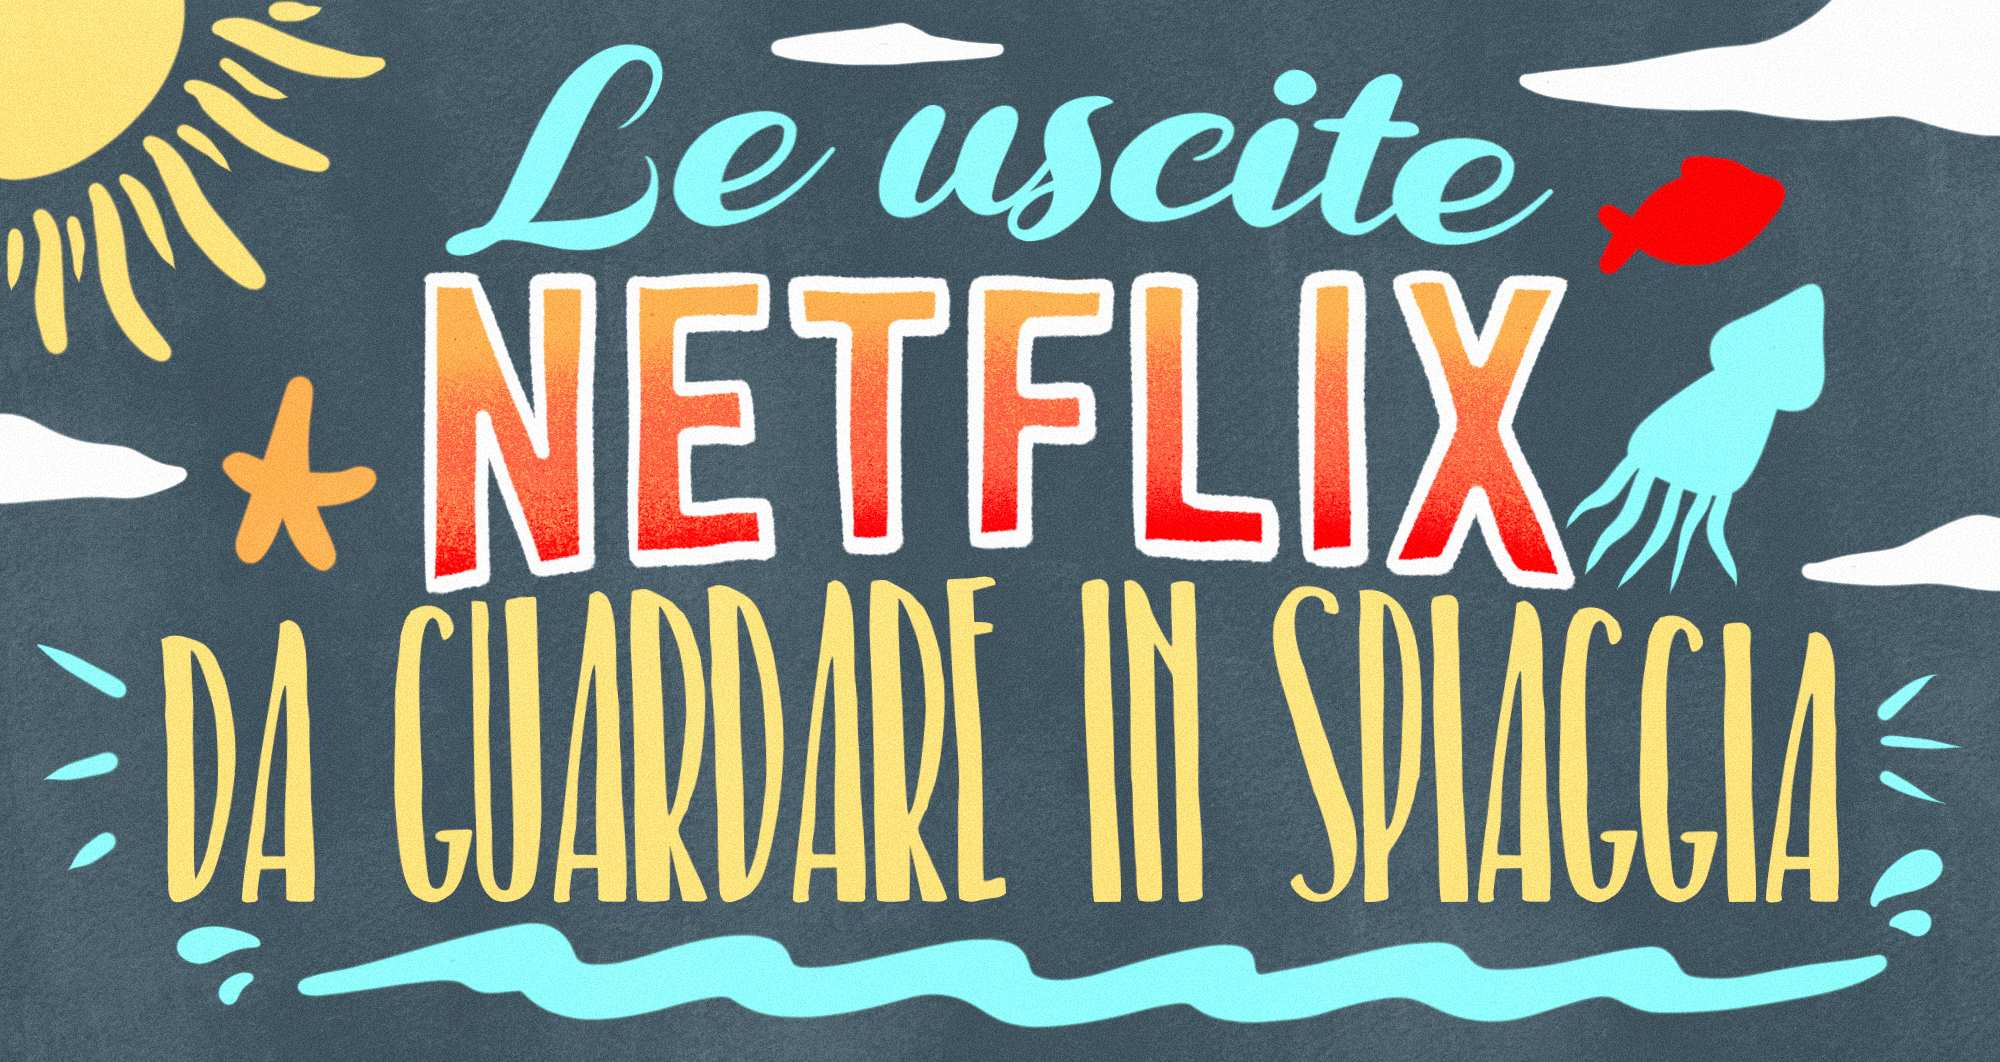 Le uscite Netflix da guardare in spiaggia!